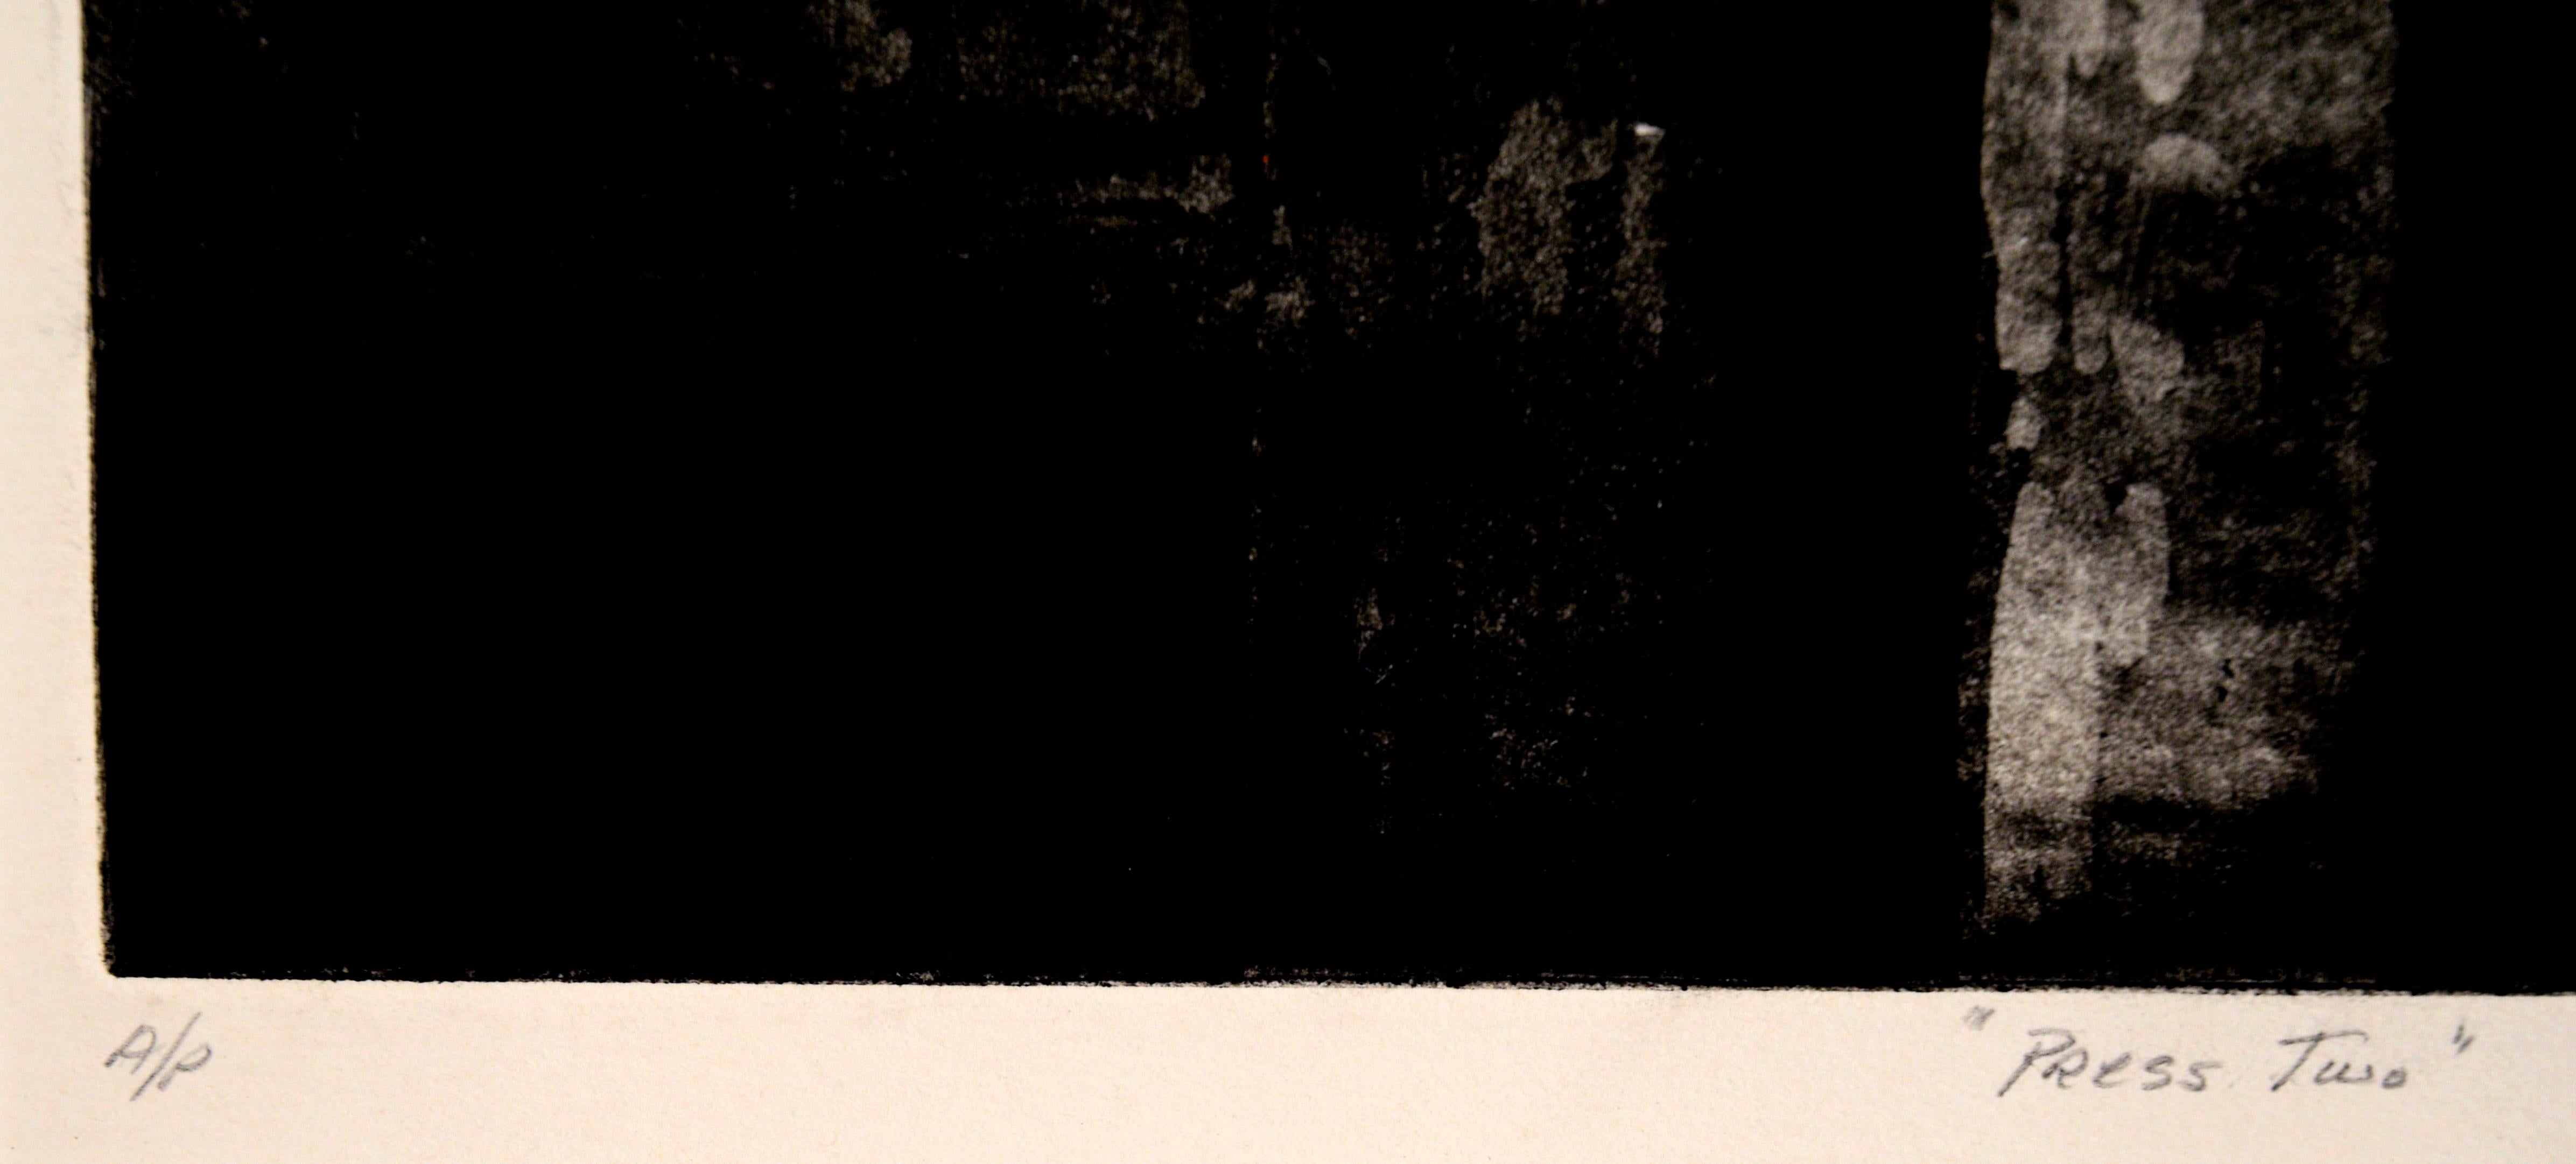 Stimmungsvolle Darstellung einer Presse von Doris Ann Warner (Amerikanerin, 1925-2010). Dieses Werk ist dunkel und gesättigt und vermittelt den Eindruck, dass sich die Presse in einem dunklen Raum befindet. Die Presse wird in einem minimalistischen